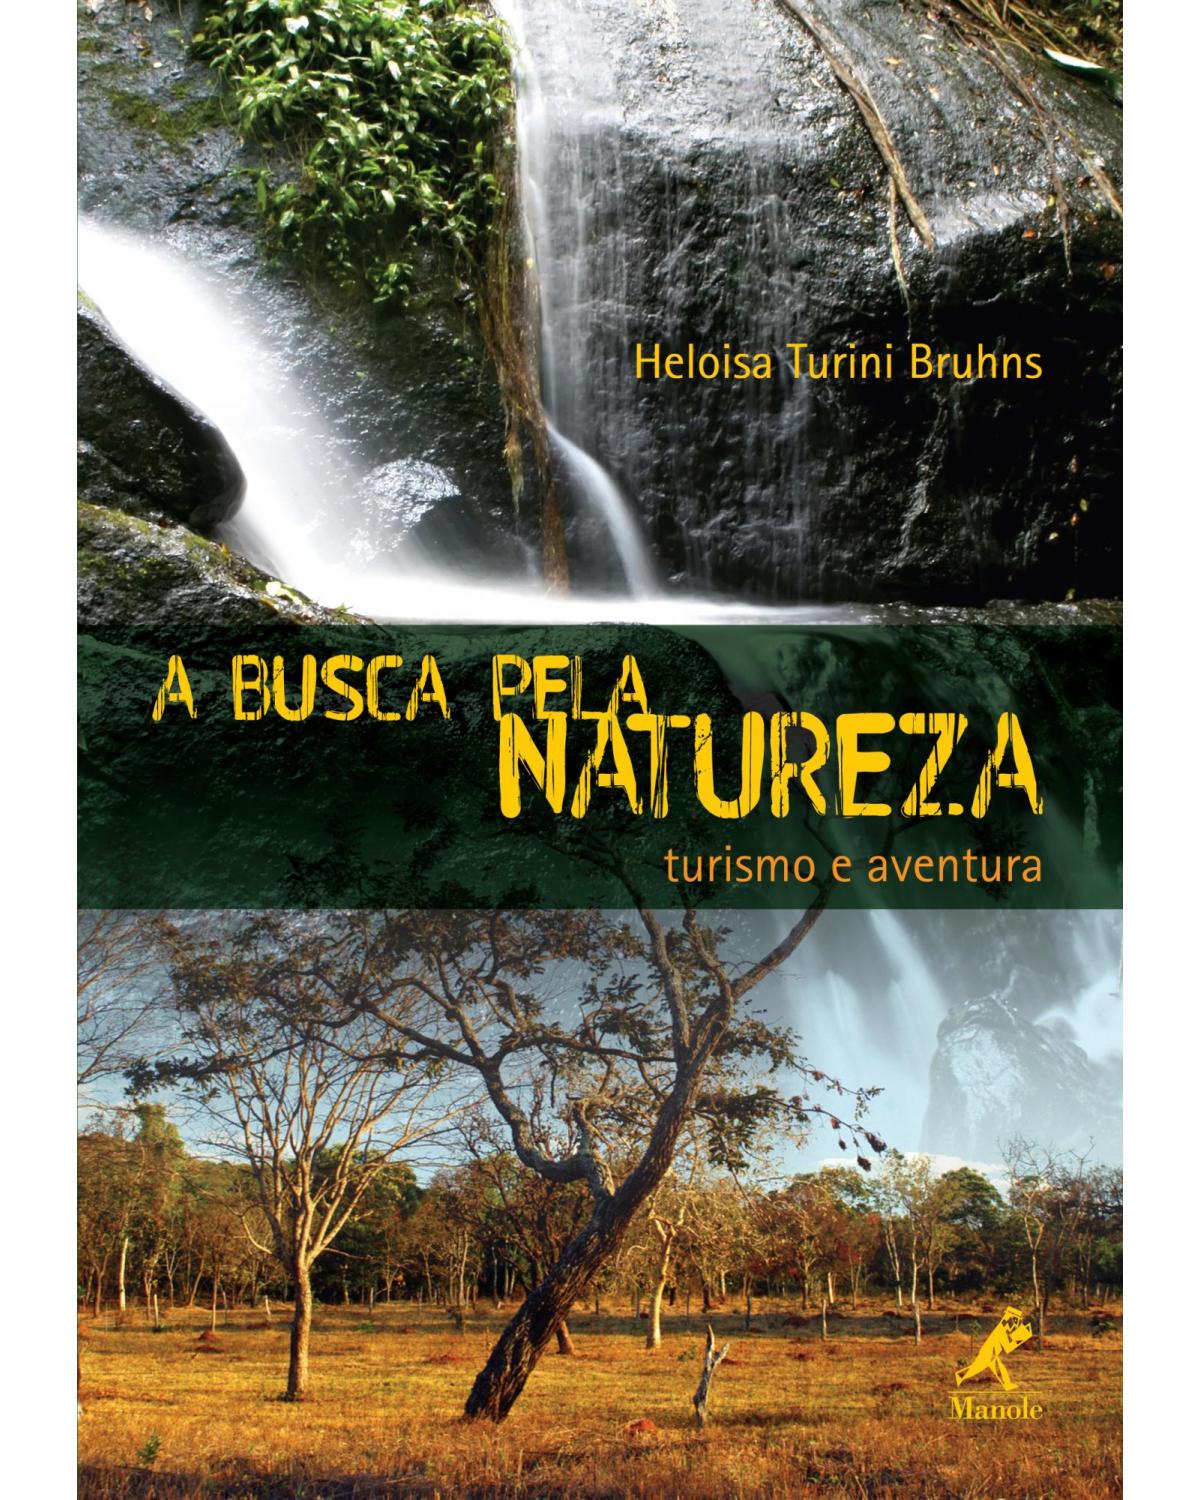 A busca pela natureza - turismo e aventura - 1ª Edição | 2009